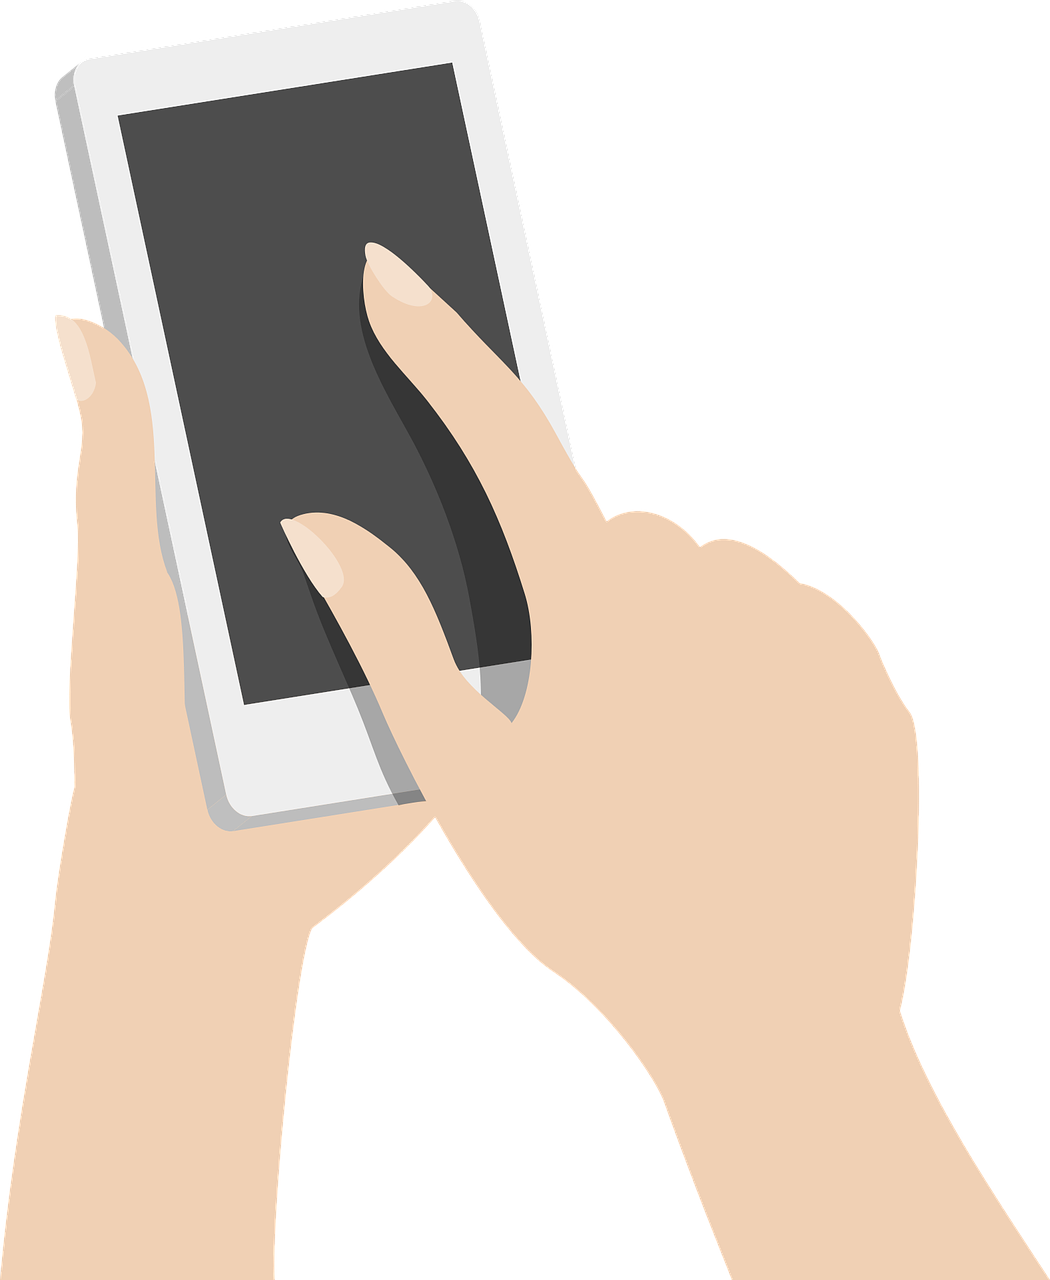 Нажатие на экран смартфона. Телефон в руке. Смартфон в руке. Векторные смартфоны с рукой. Нарисованная рука с телефоном.